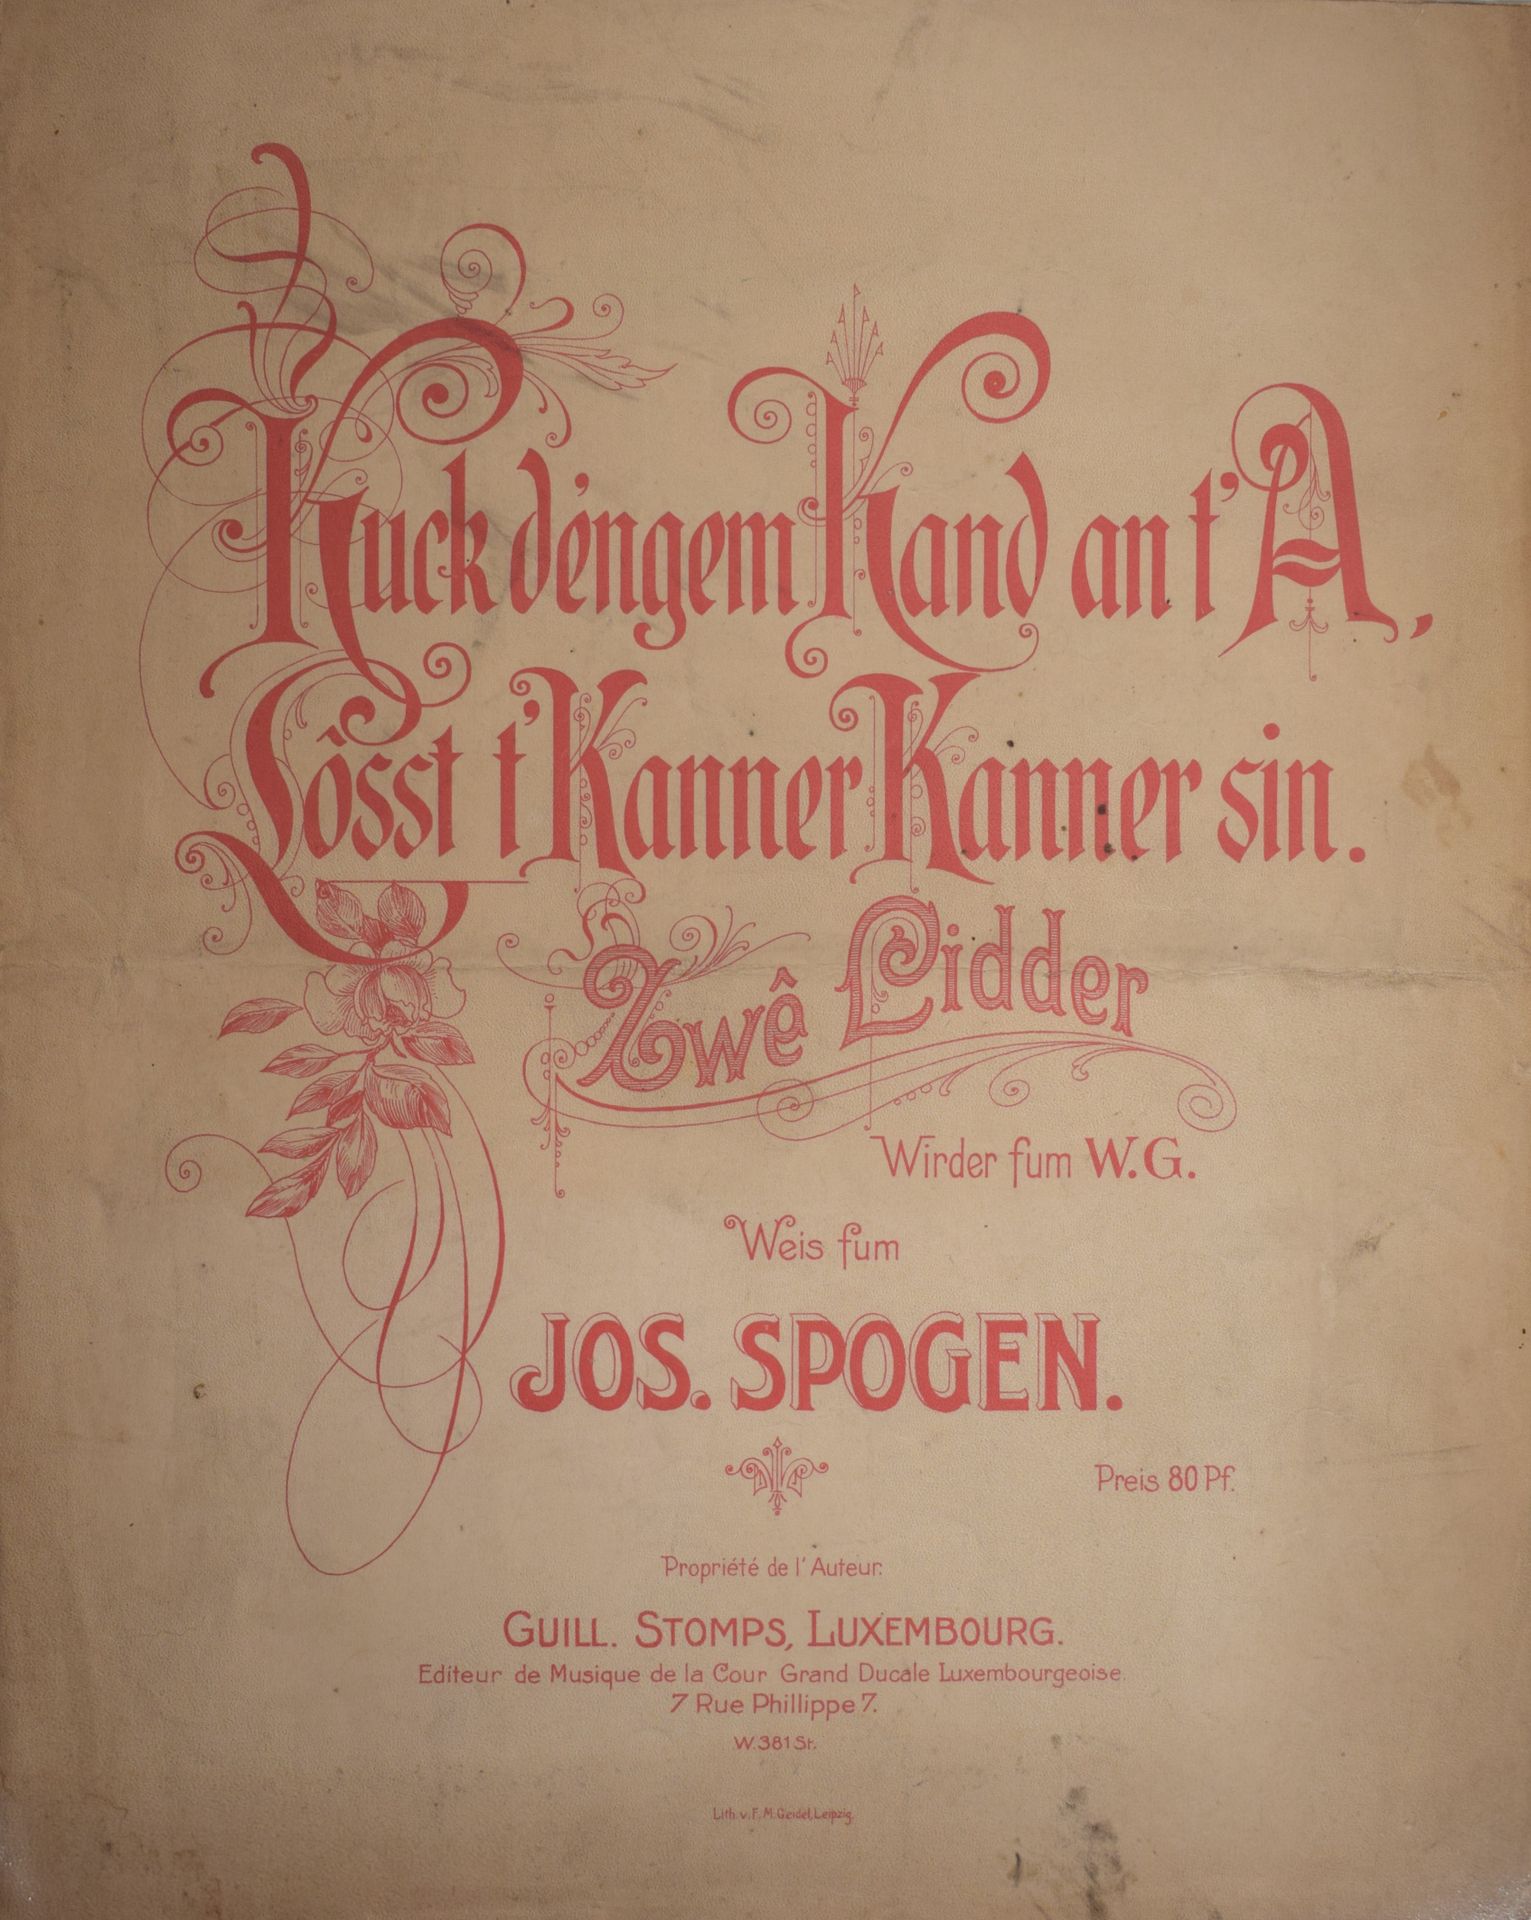 Null (MUSIC) Music score by Jos. SPOGEN : Kuck déengem Kand an t'A, Losst t'Kann&hellip;